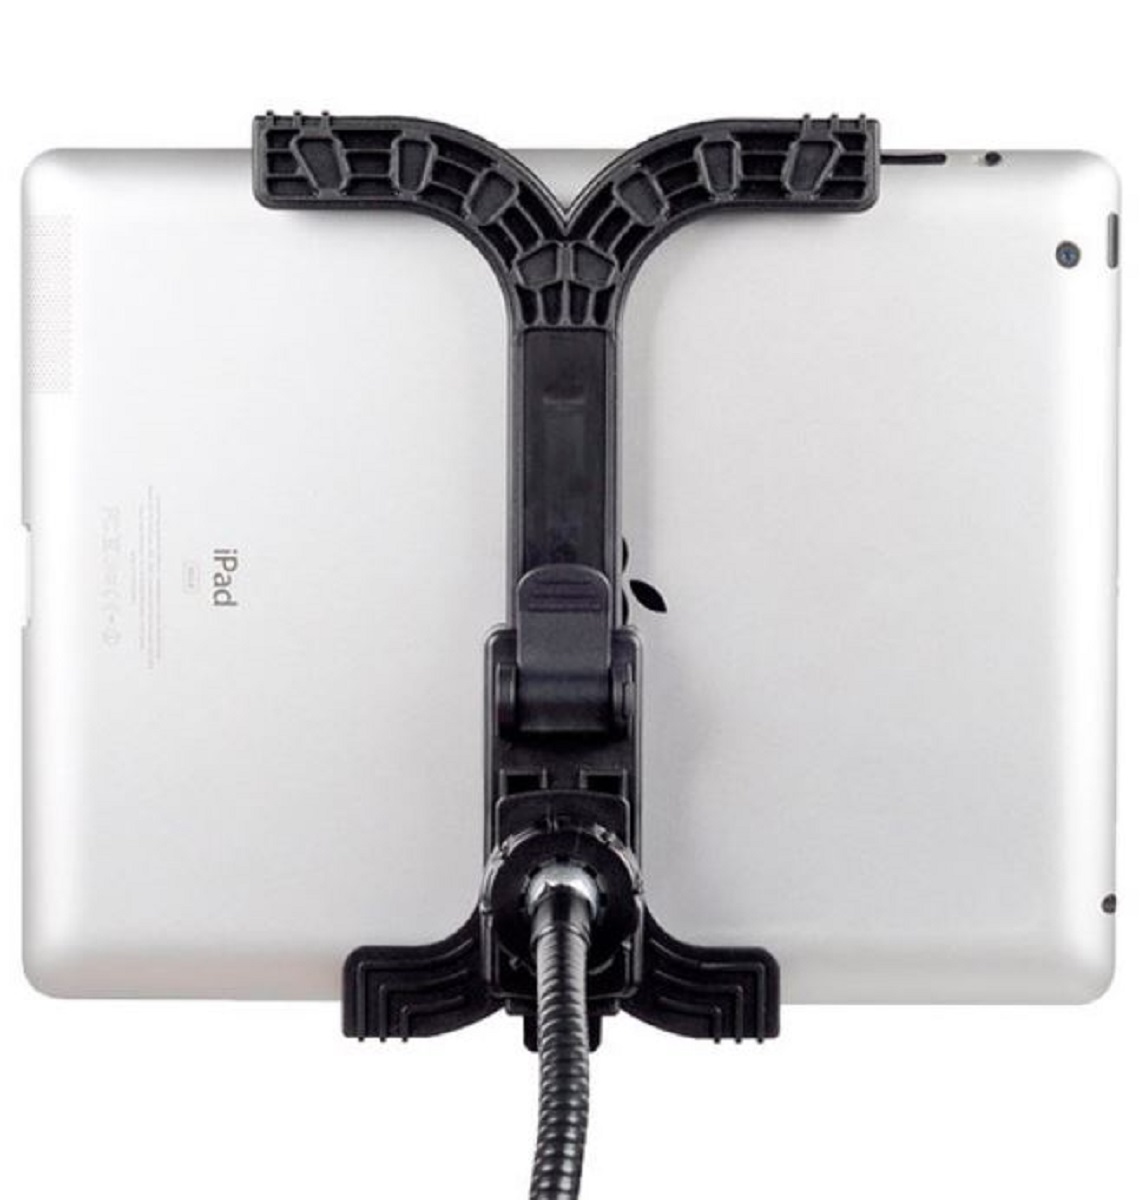 BRESSER BR-145 flexible gooseneck mount for tablets and mobile phones